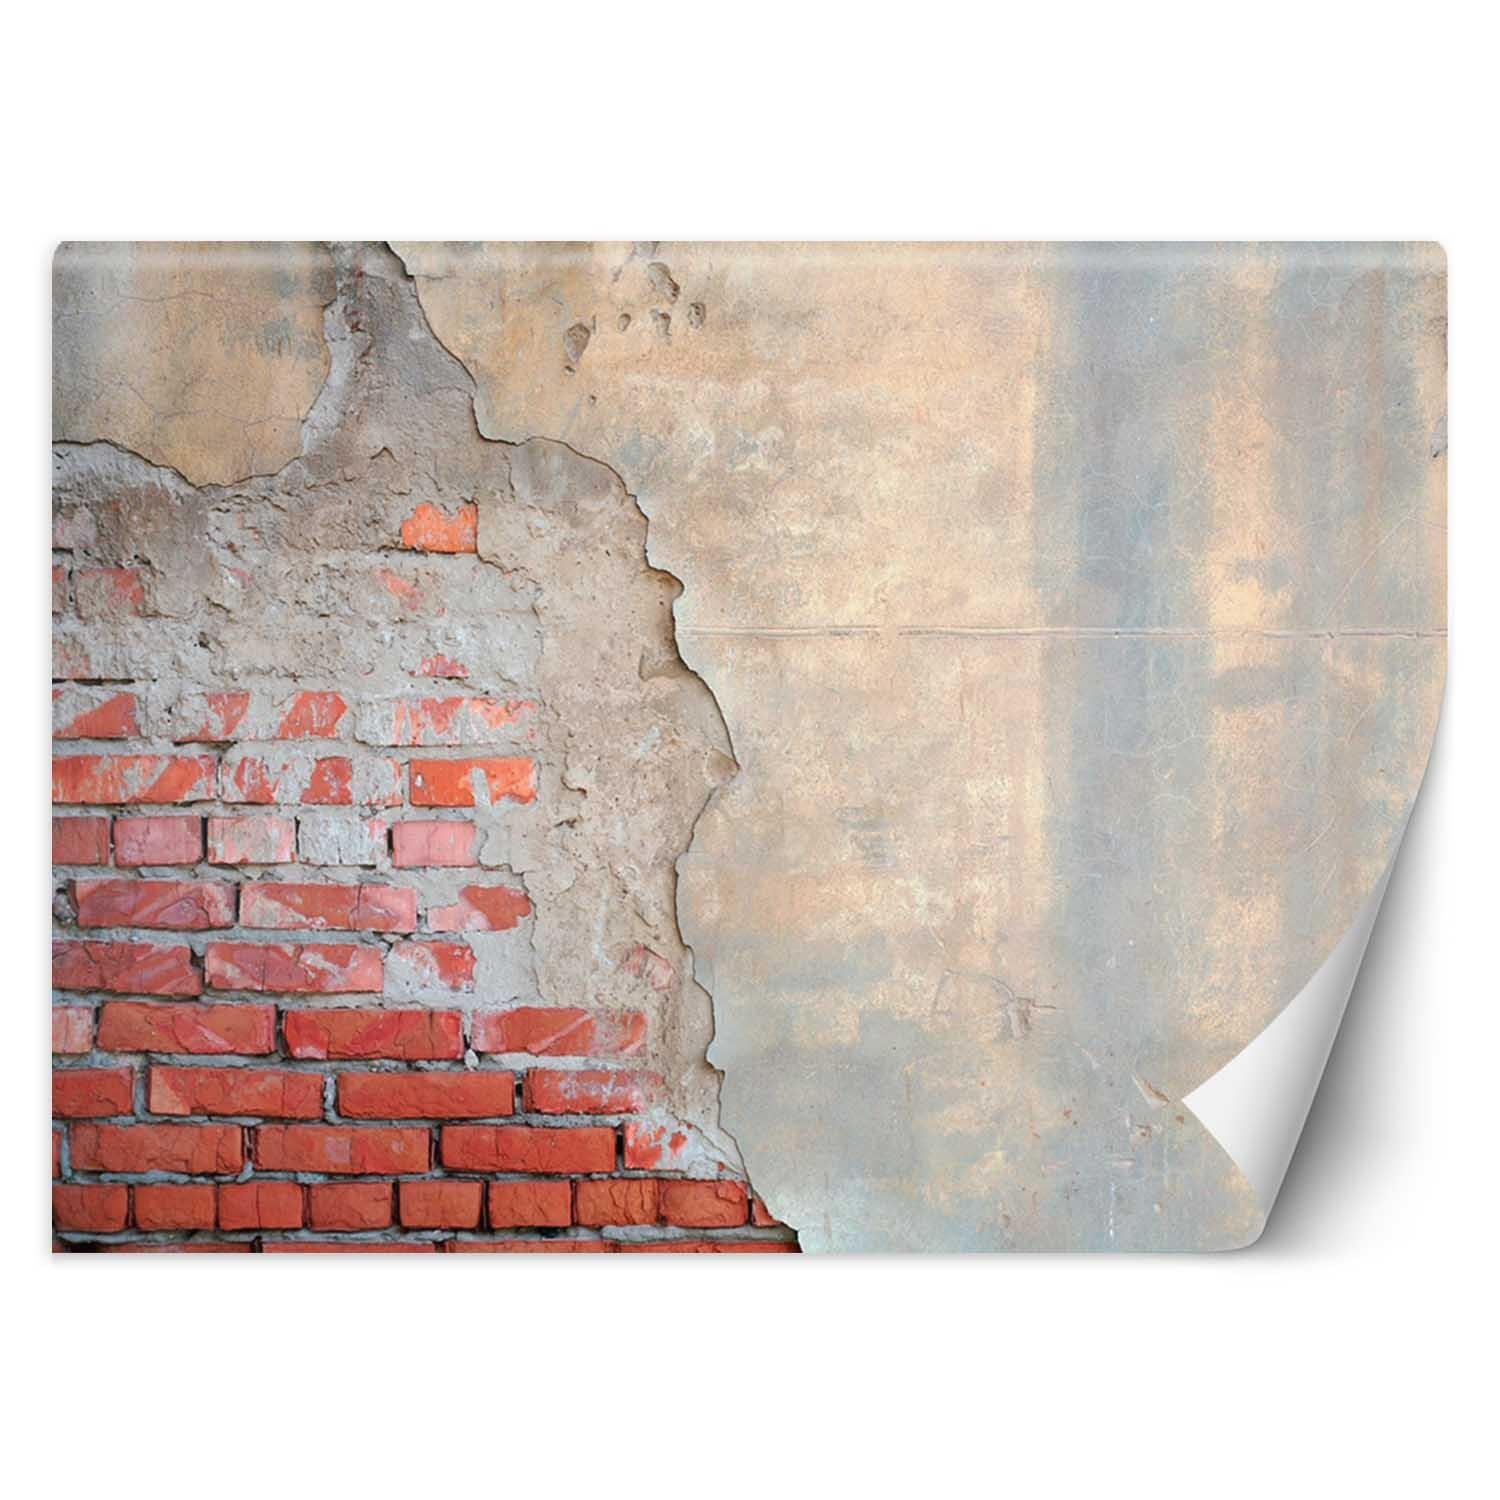 Trend24 – Behang – Bakstenen Muur – Behangpapier – Behang Woonkamer – Fotobehang – 450x315x2 cm – Incl. behanglijm